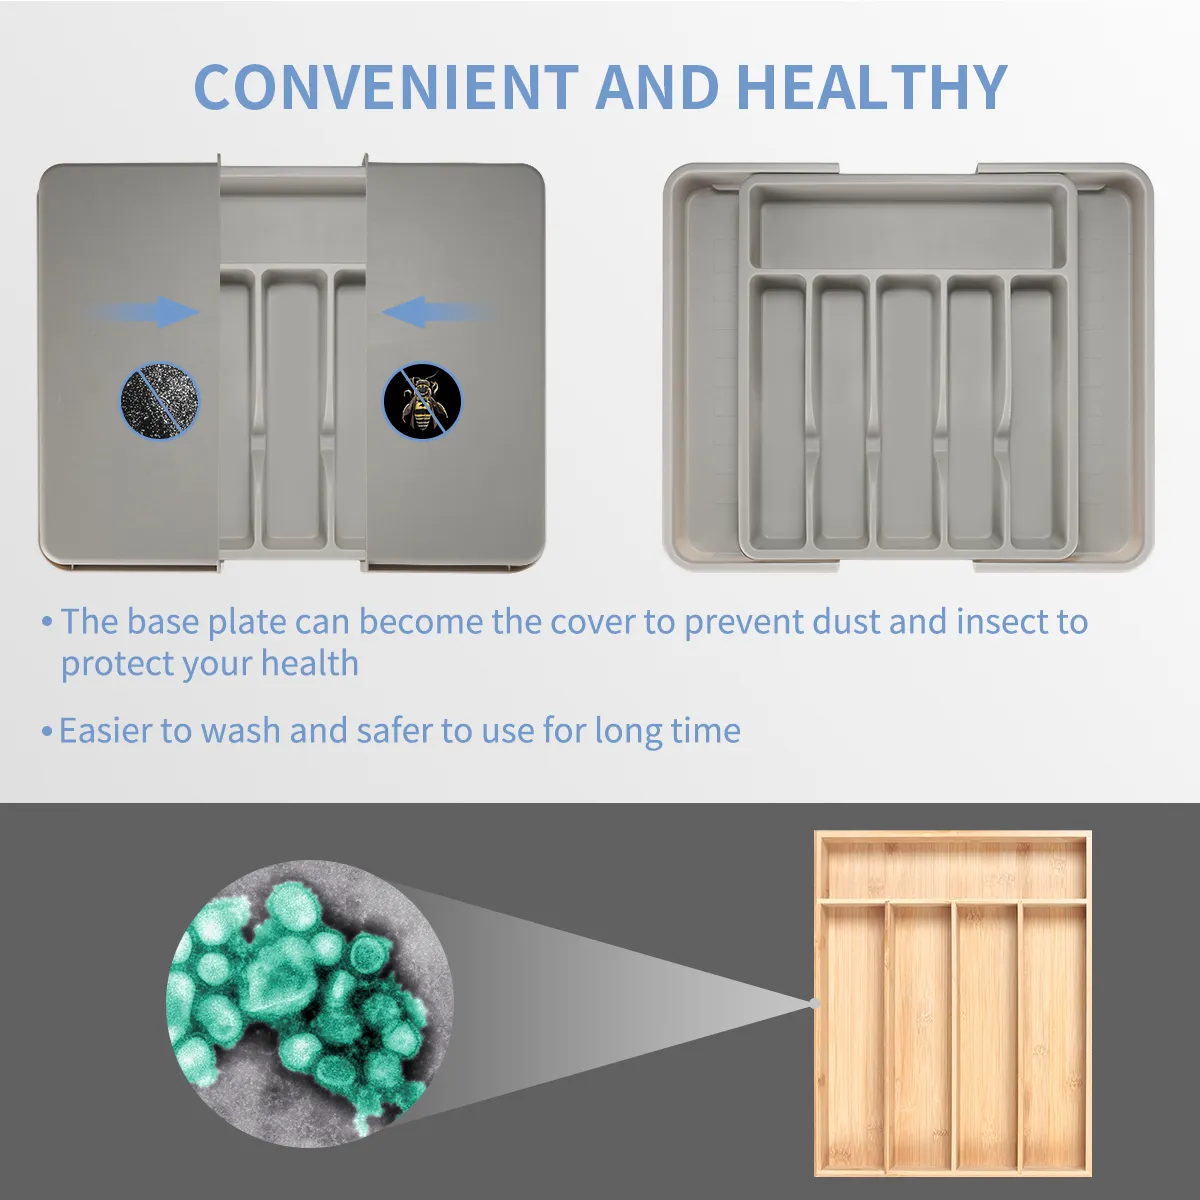 Gümüş tepsi lüks kaşık-çatal tepsisi gereçler aracı çekmece düzenleyiciler PP genişletilebilir çekmece organizatör mutfak çatal organizatör